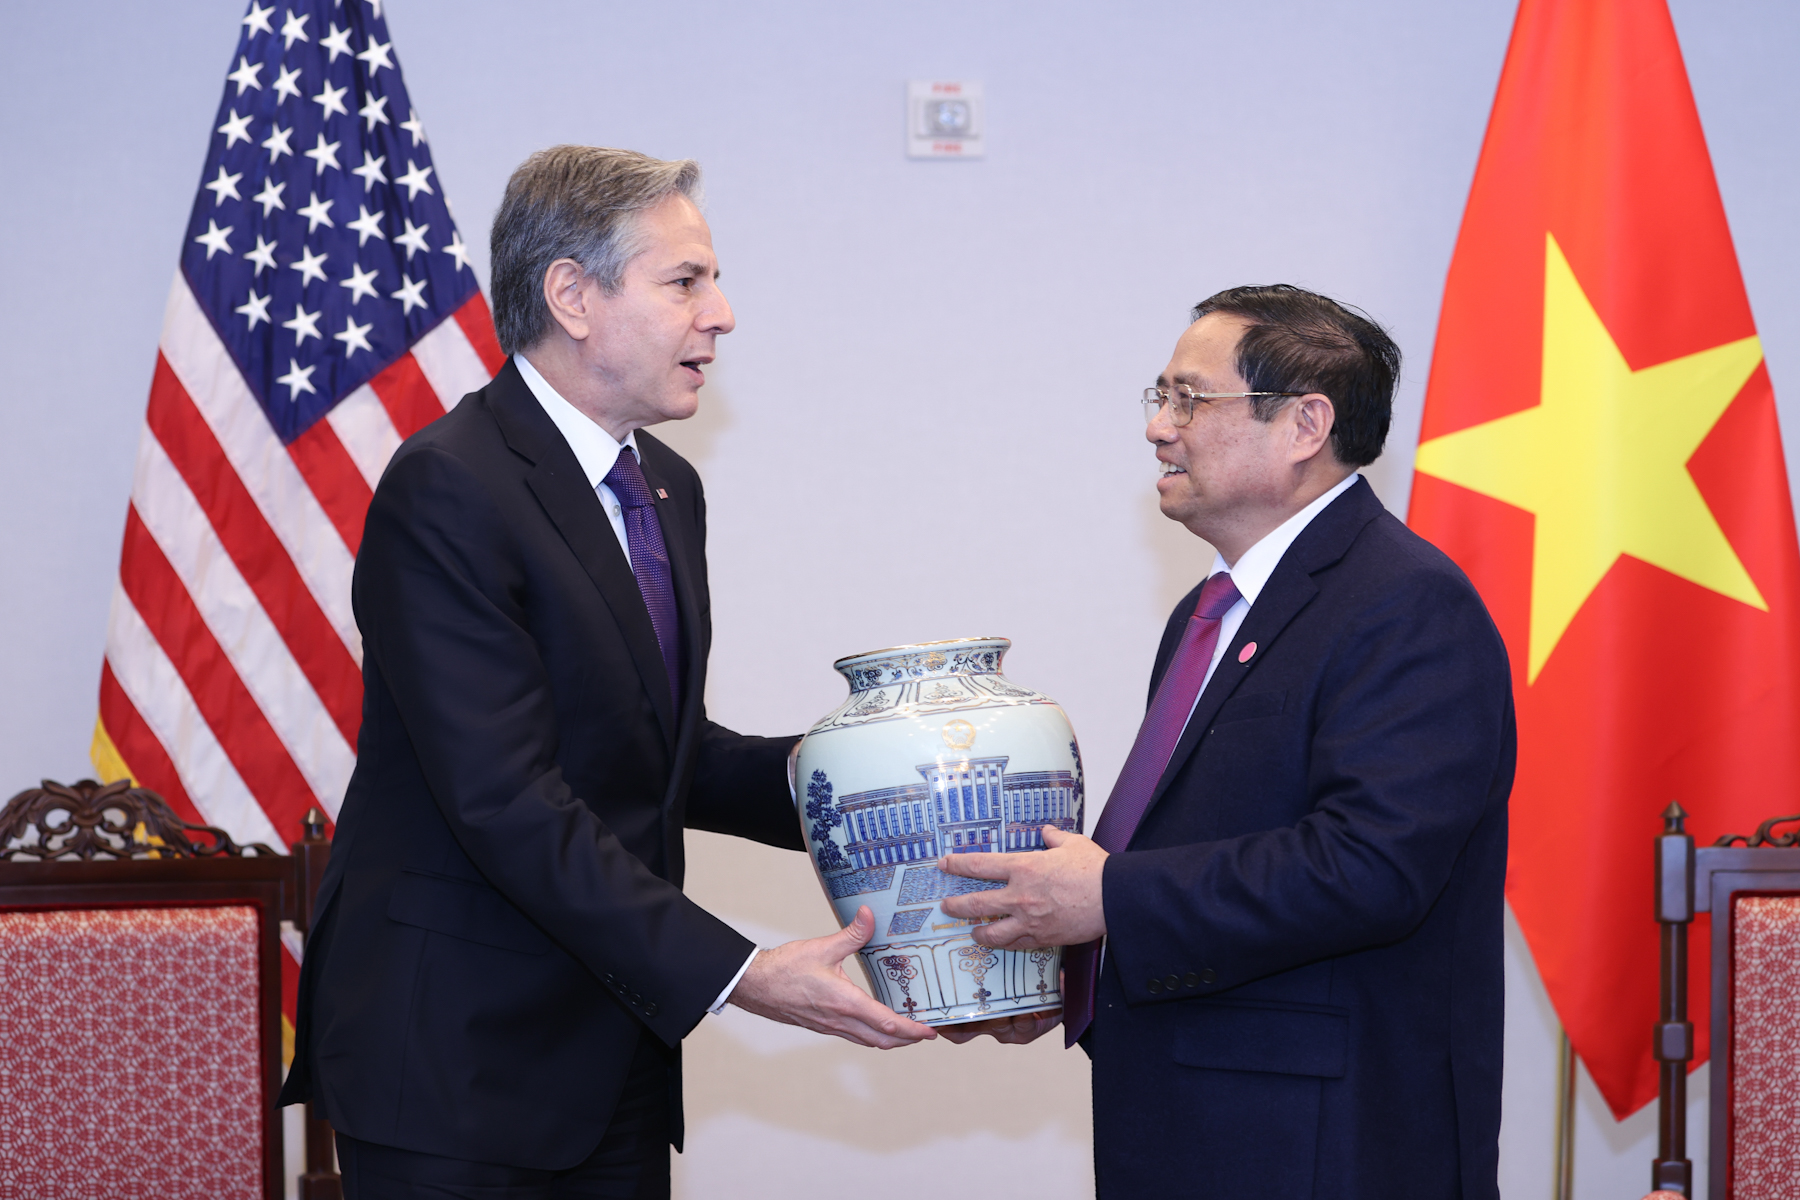 Ngoại trưởng Hoa Kỳ: Ủng hộ Việt Nam mạnh, độc lập, thịnh vượng - Ảnh 4.